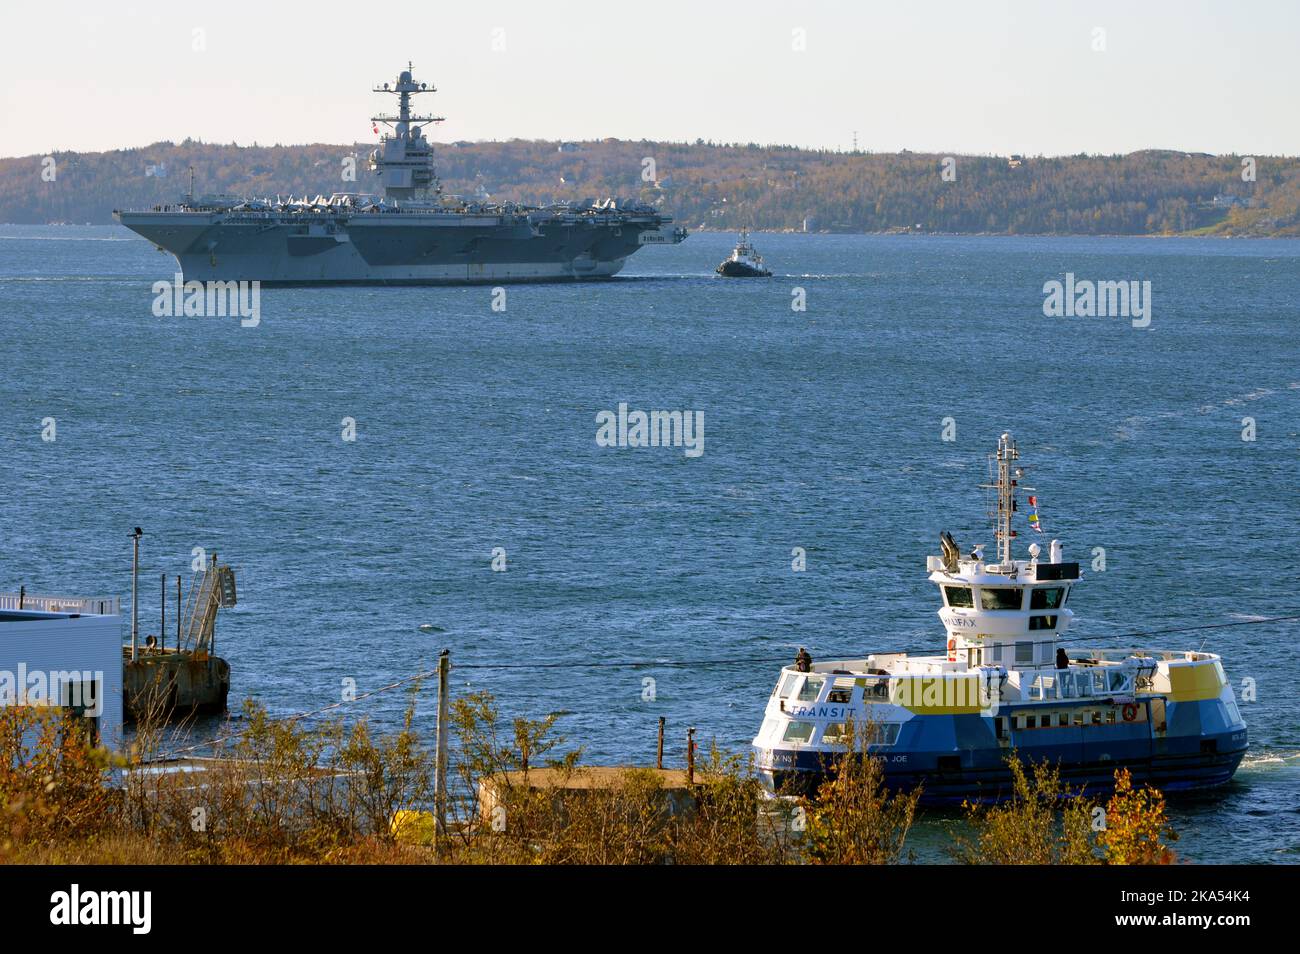 La portaerei americana USS Gerald R. Ford (CVN-78), la più grande al mondo, durante la sua prima visita al porto d'oltremare a Halifax, Nuova Scozia, Canada (2022) Foto Stock